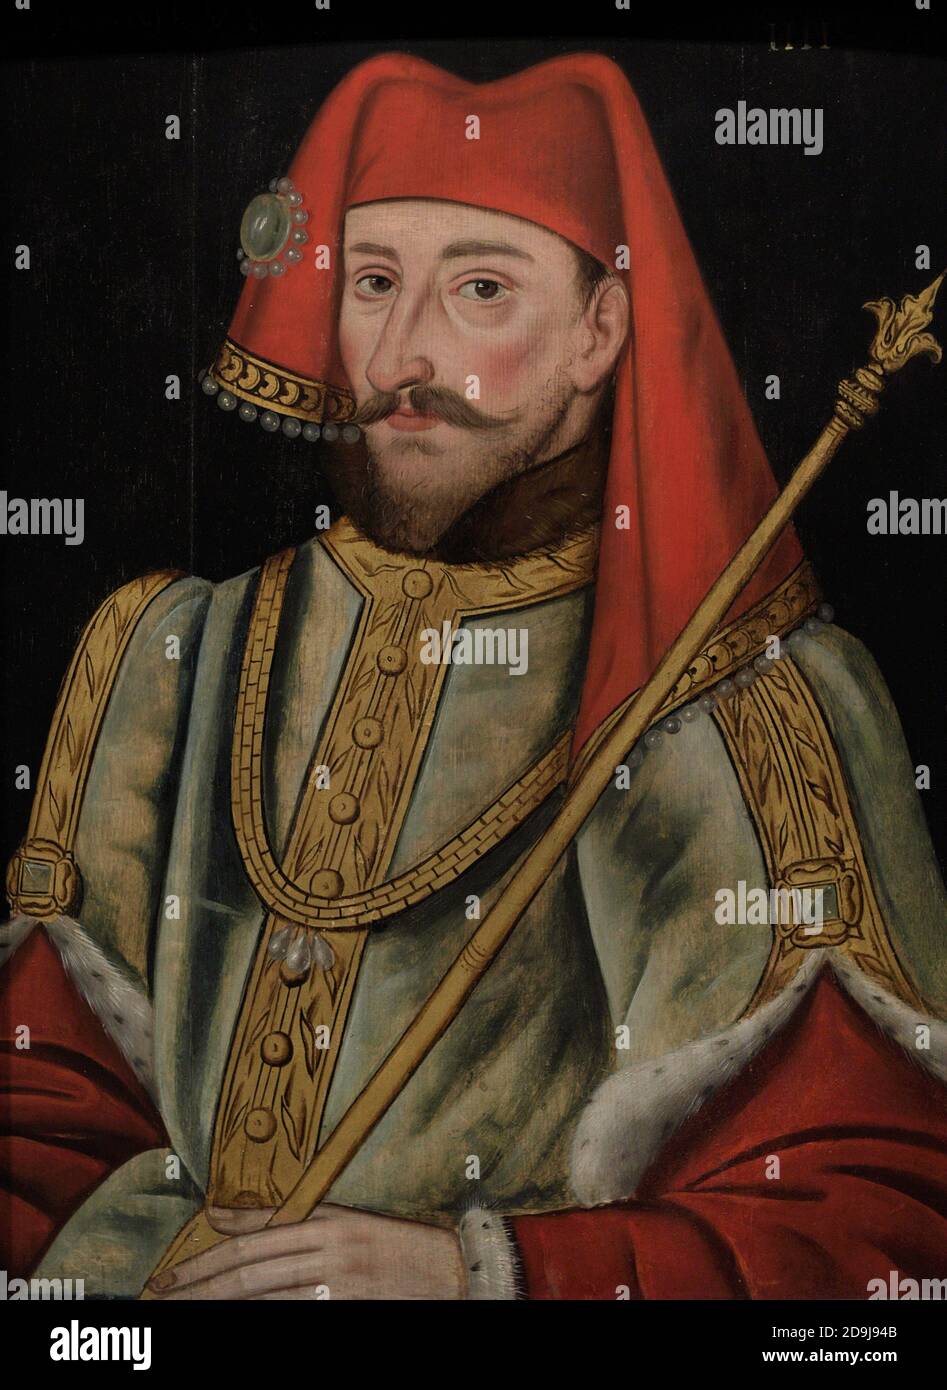 Henri IV Roi d'Angleterre (1367-1413). Portrait d'un artiste non identifié. Huile sur panneau, 1597-1618. Galerie nationale de portraits. Londres, Angleterre, Royaume-Uni. Banque D'Images